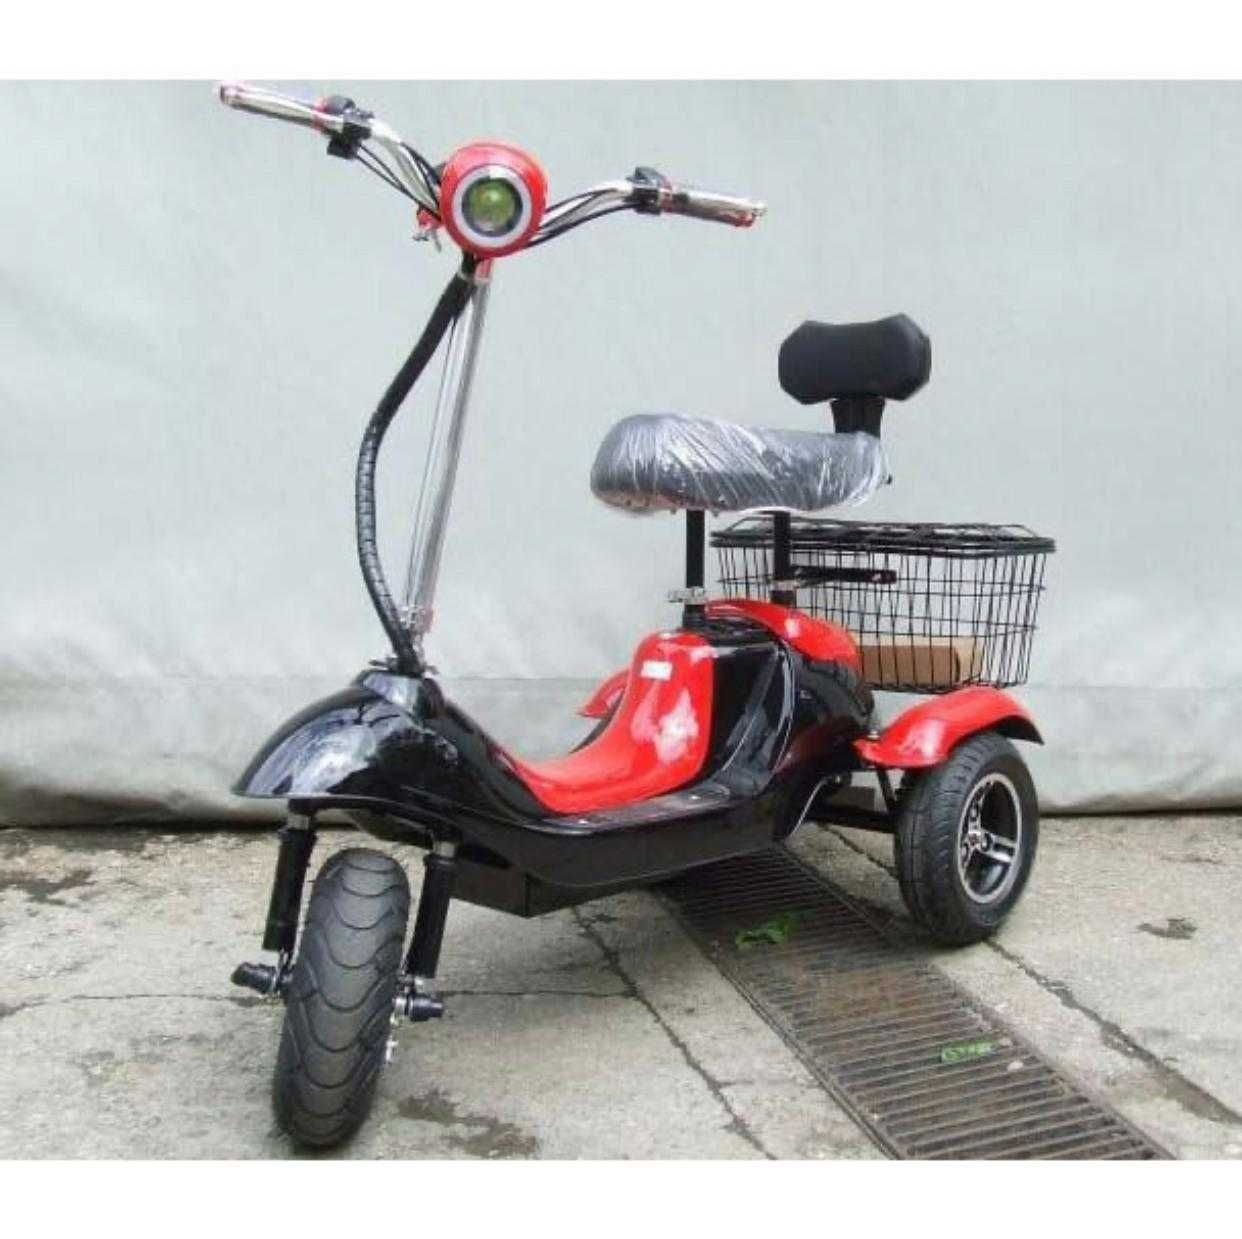 Tricicleta electrica fara permis -26% Adulti / varstnici SIGILAT NOU